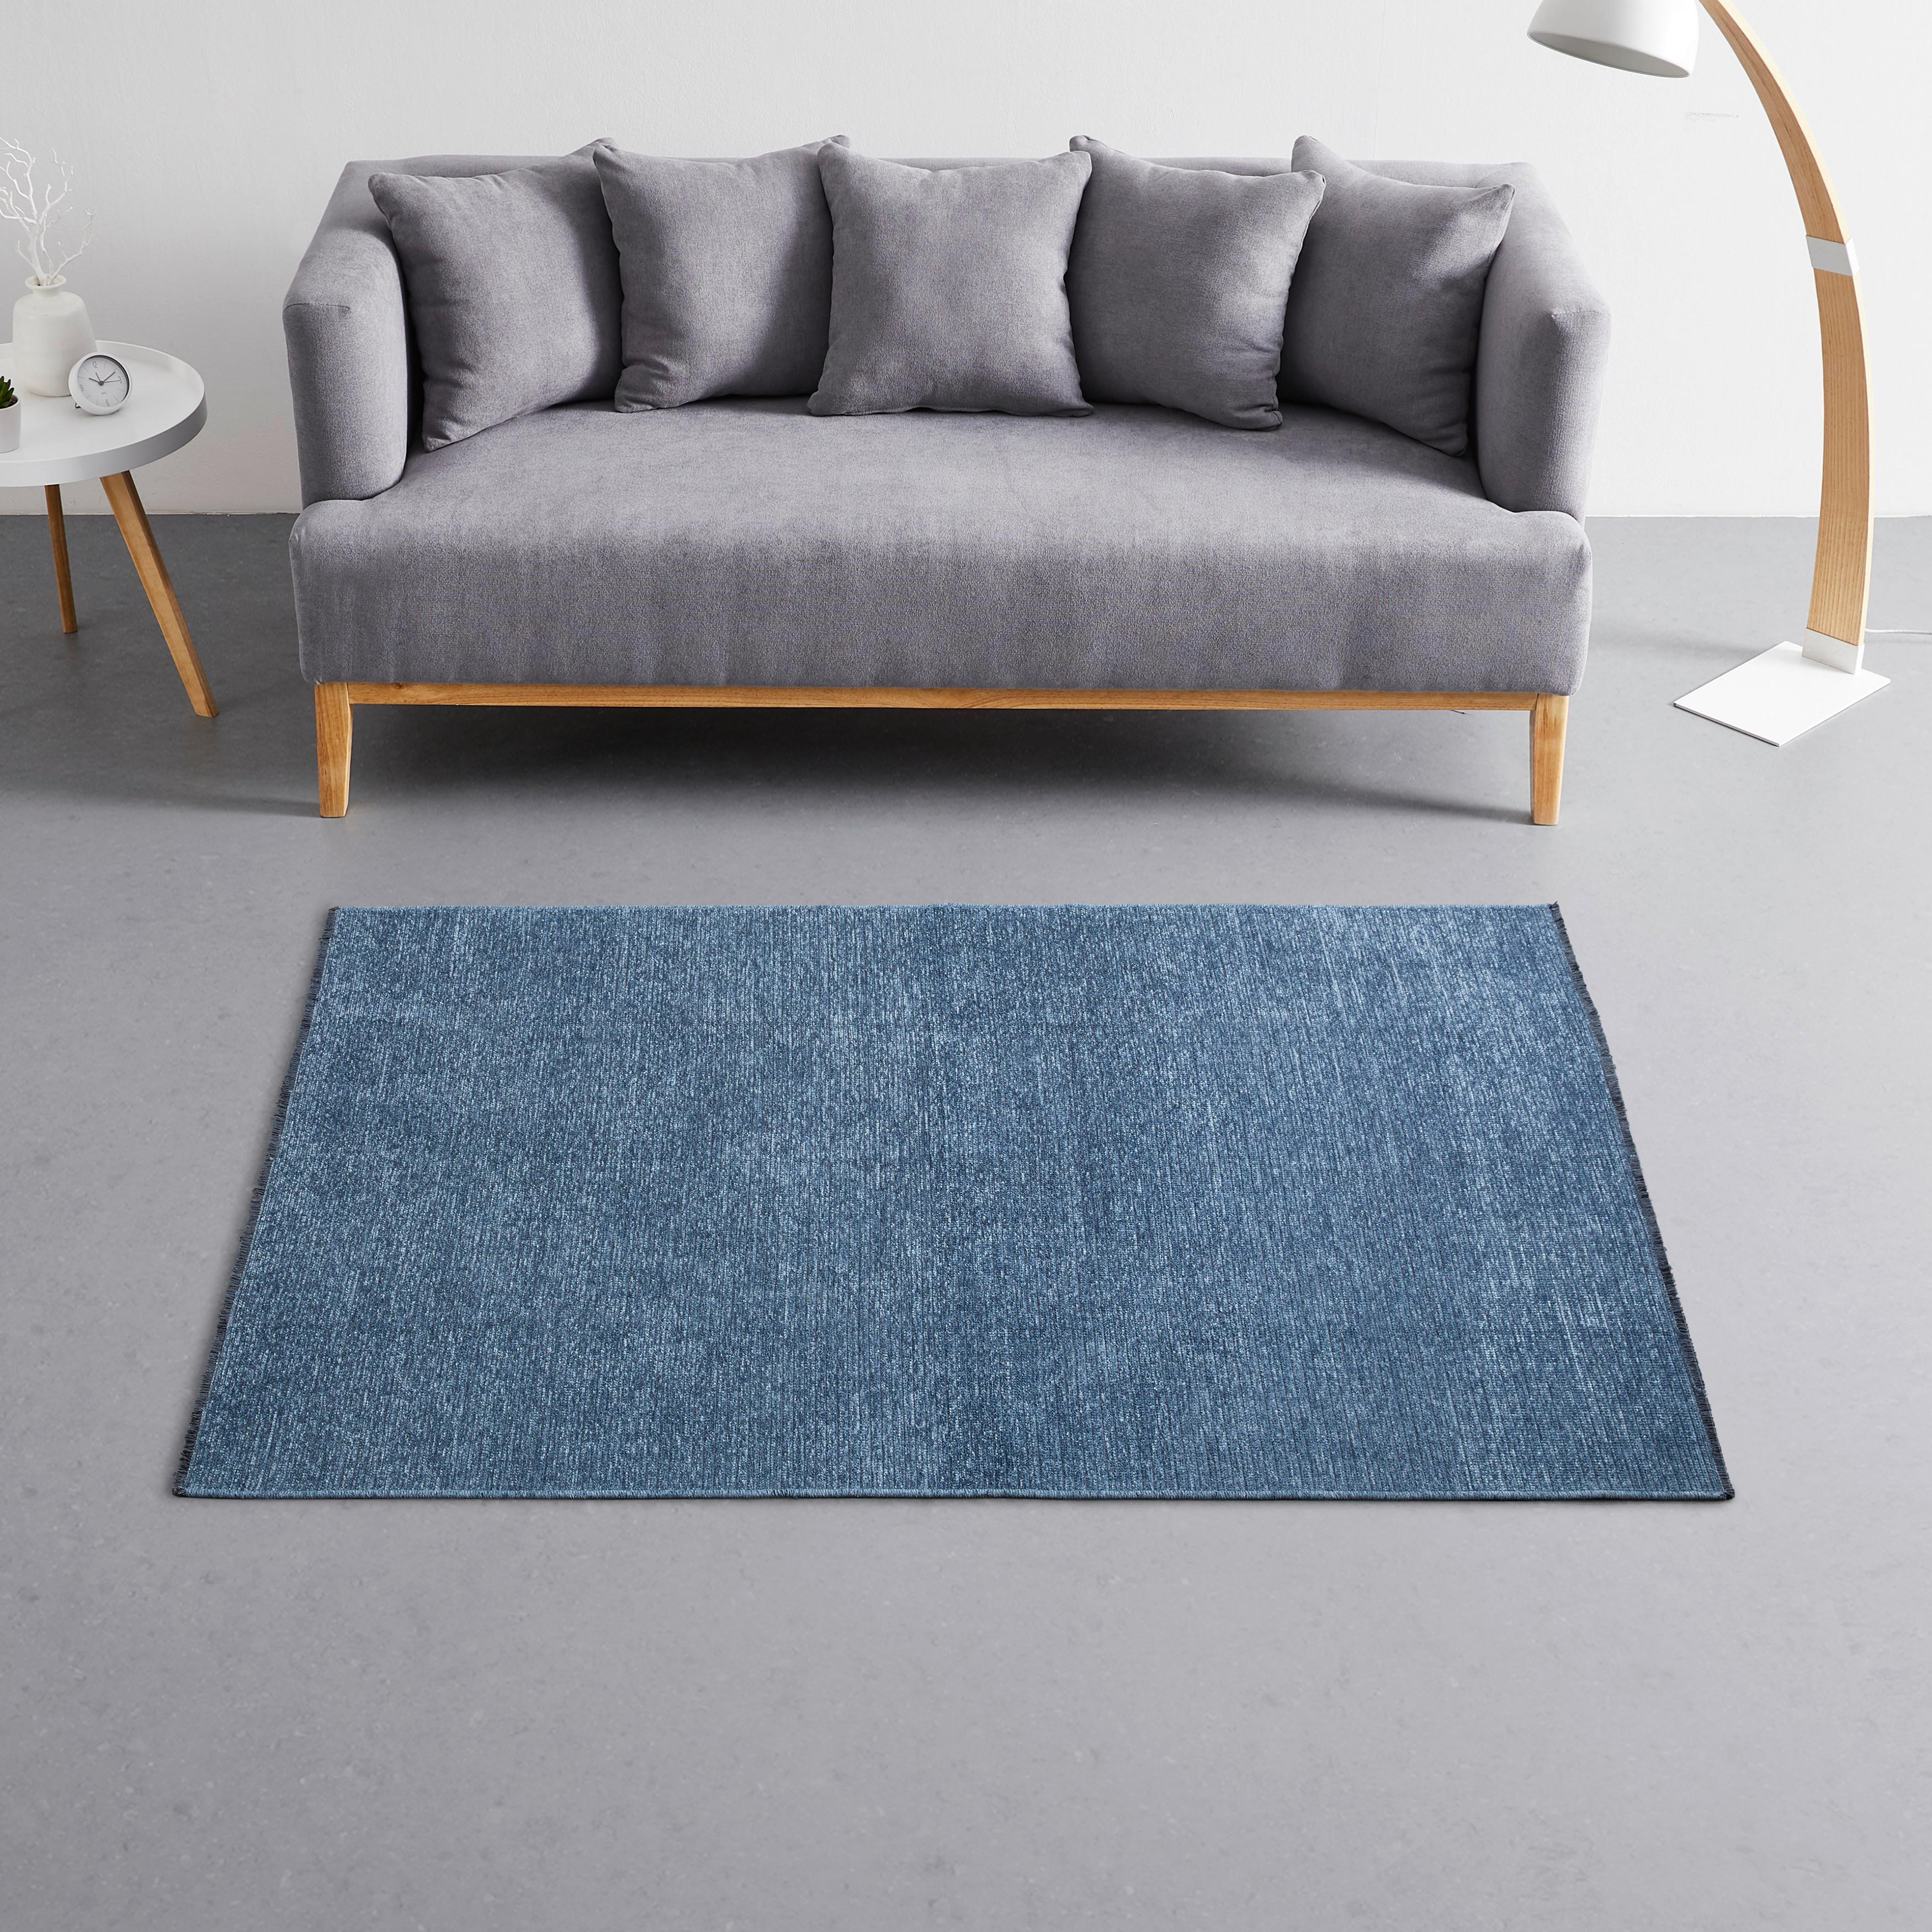 Szőtt Szőnyeg Silke 120/170 - Kék, romantikus/Landhaus, Textil (120/170cm) - Modern Living